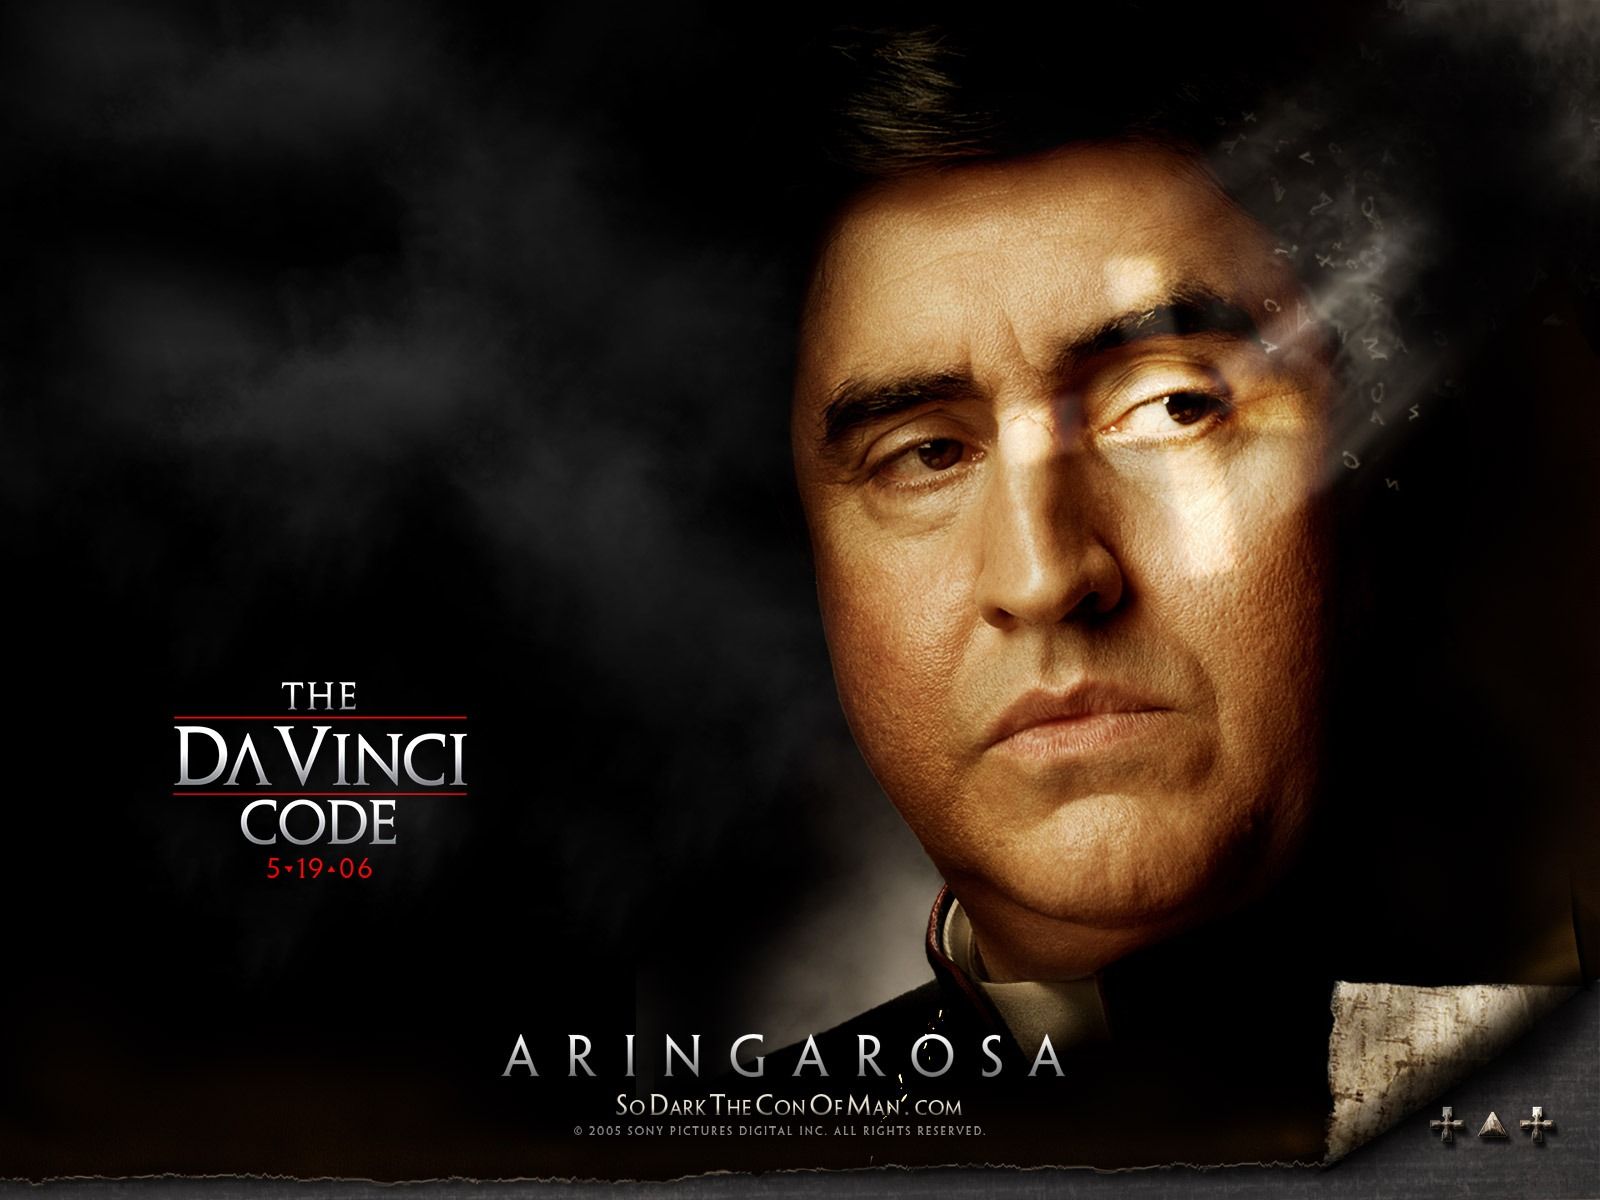 Aringarosa Wallpaper The Da Vinci Code Movies Wallpaper in jpg format for free download